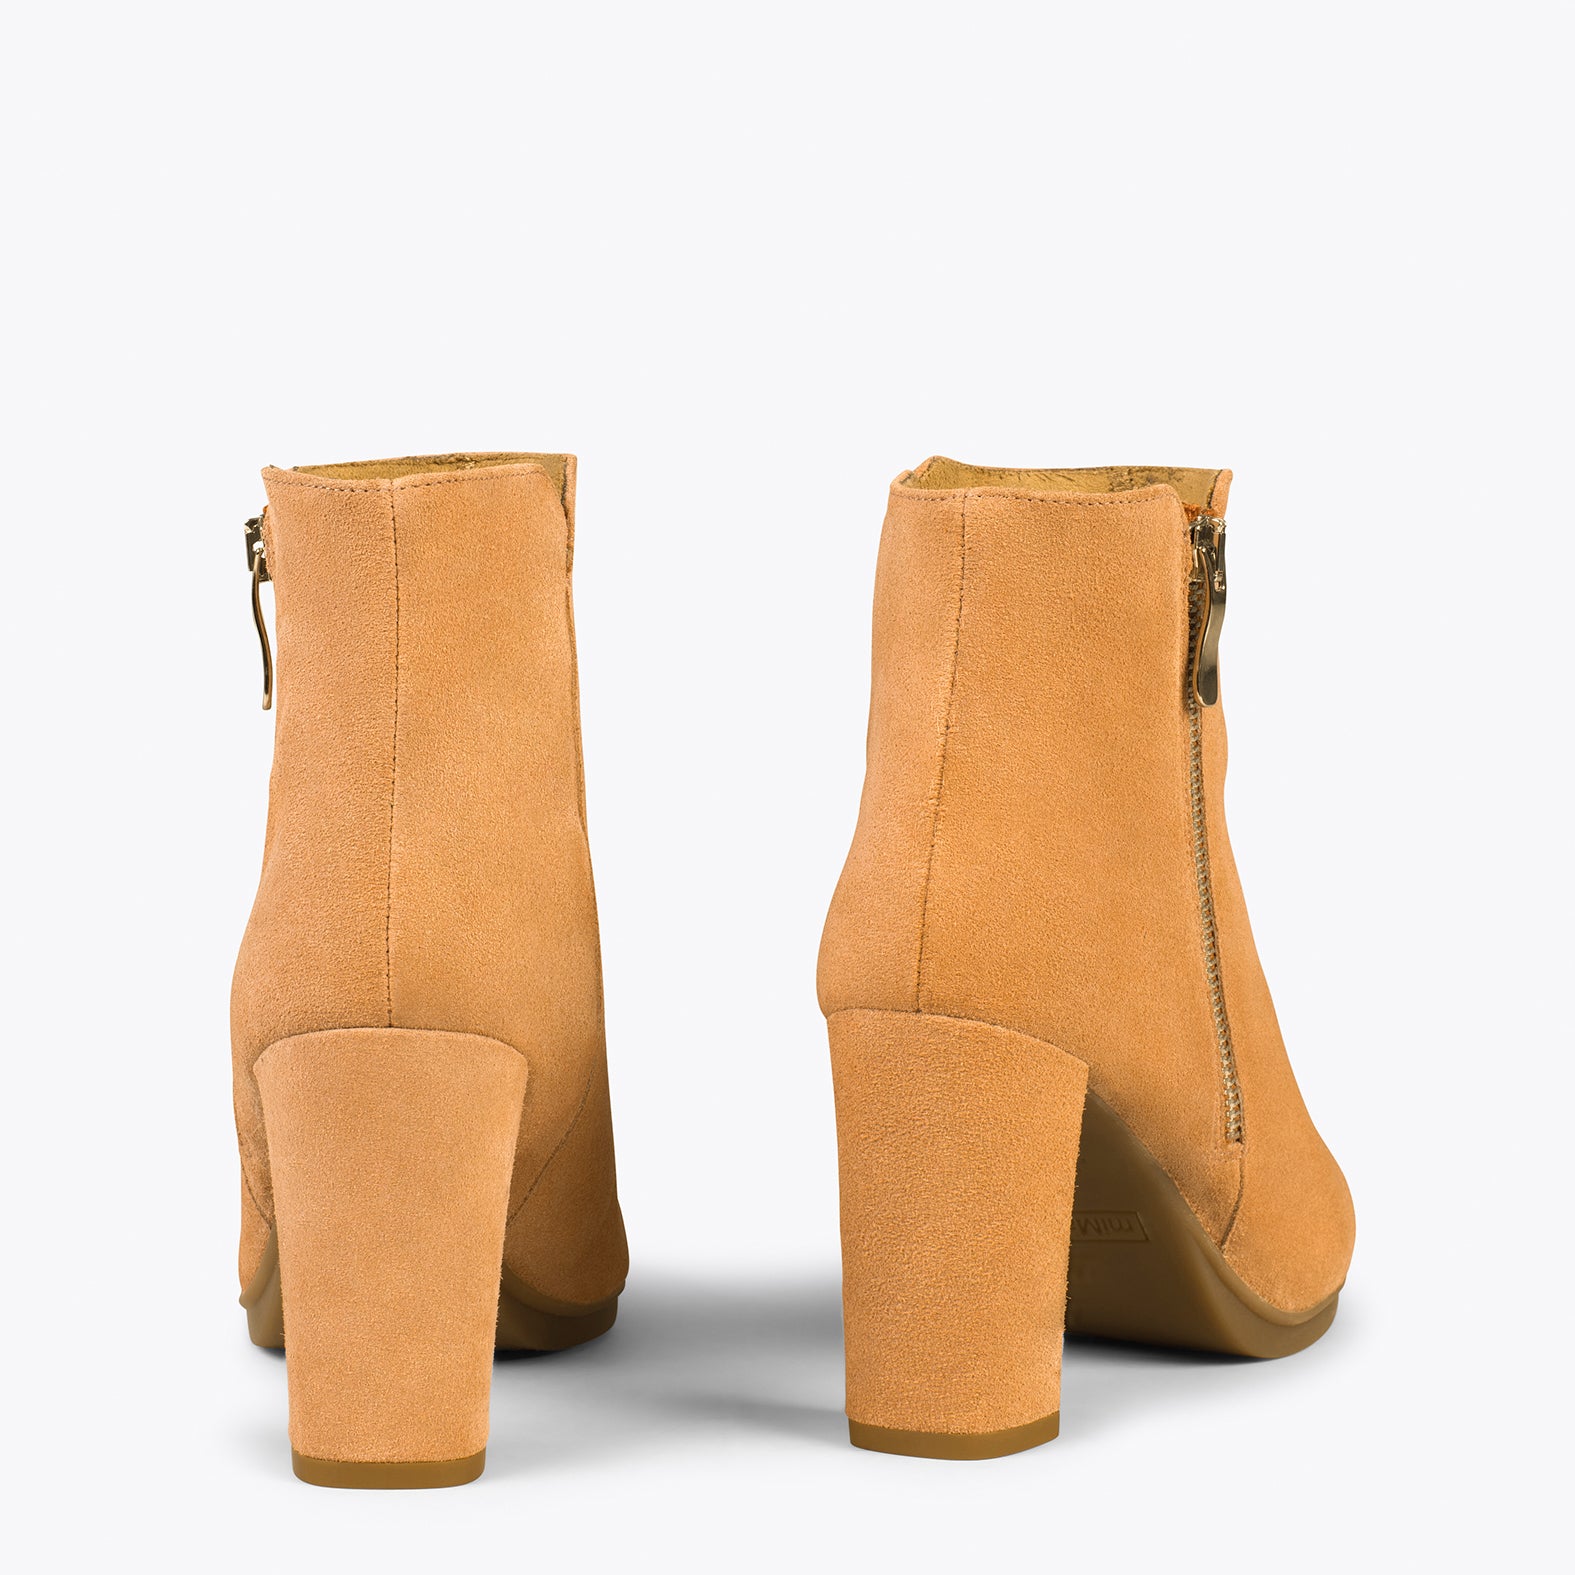 URBAN BOOTIE – CAMEL high heel booties